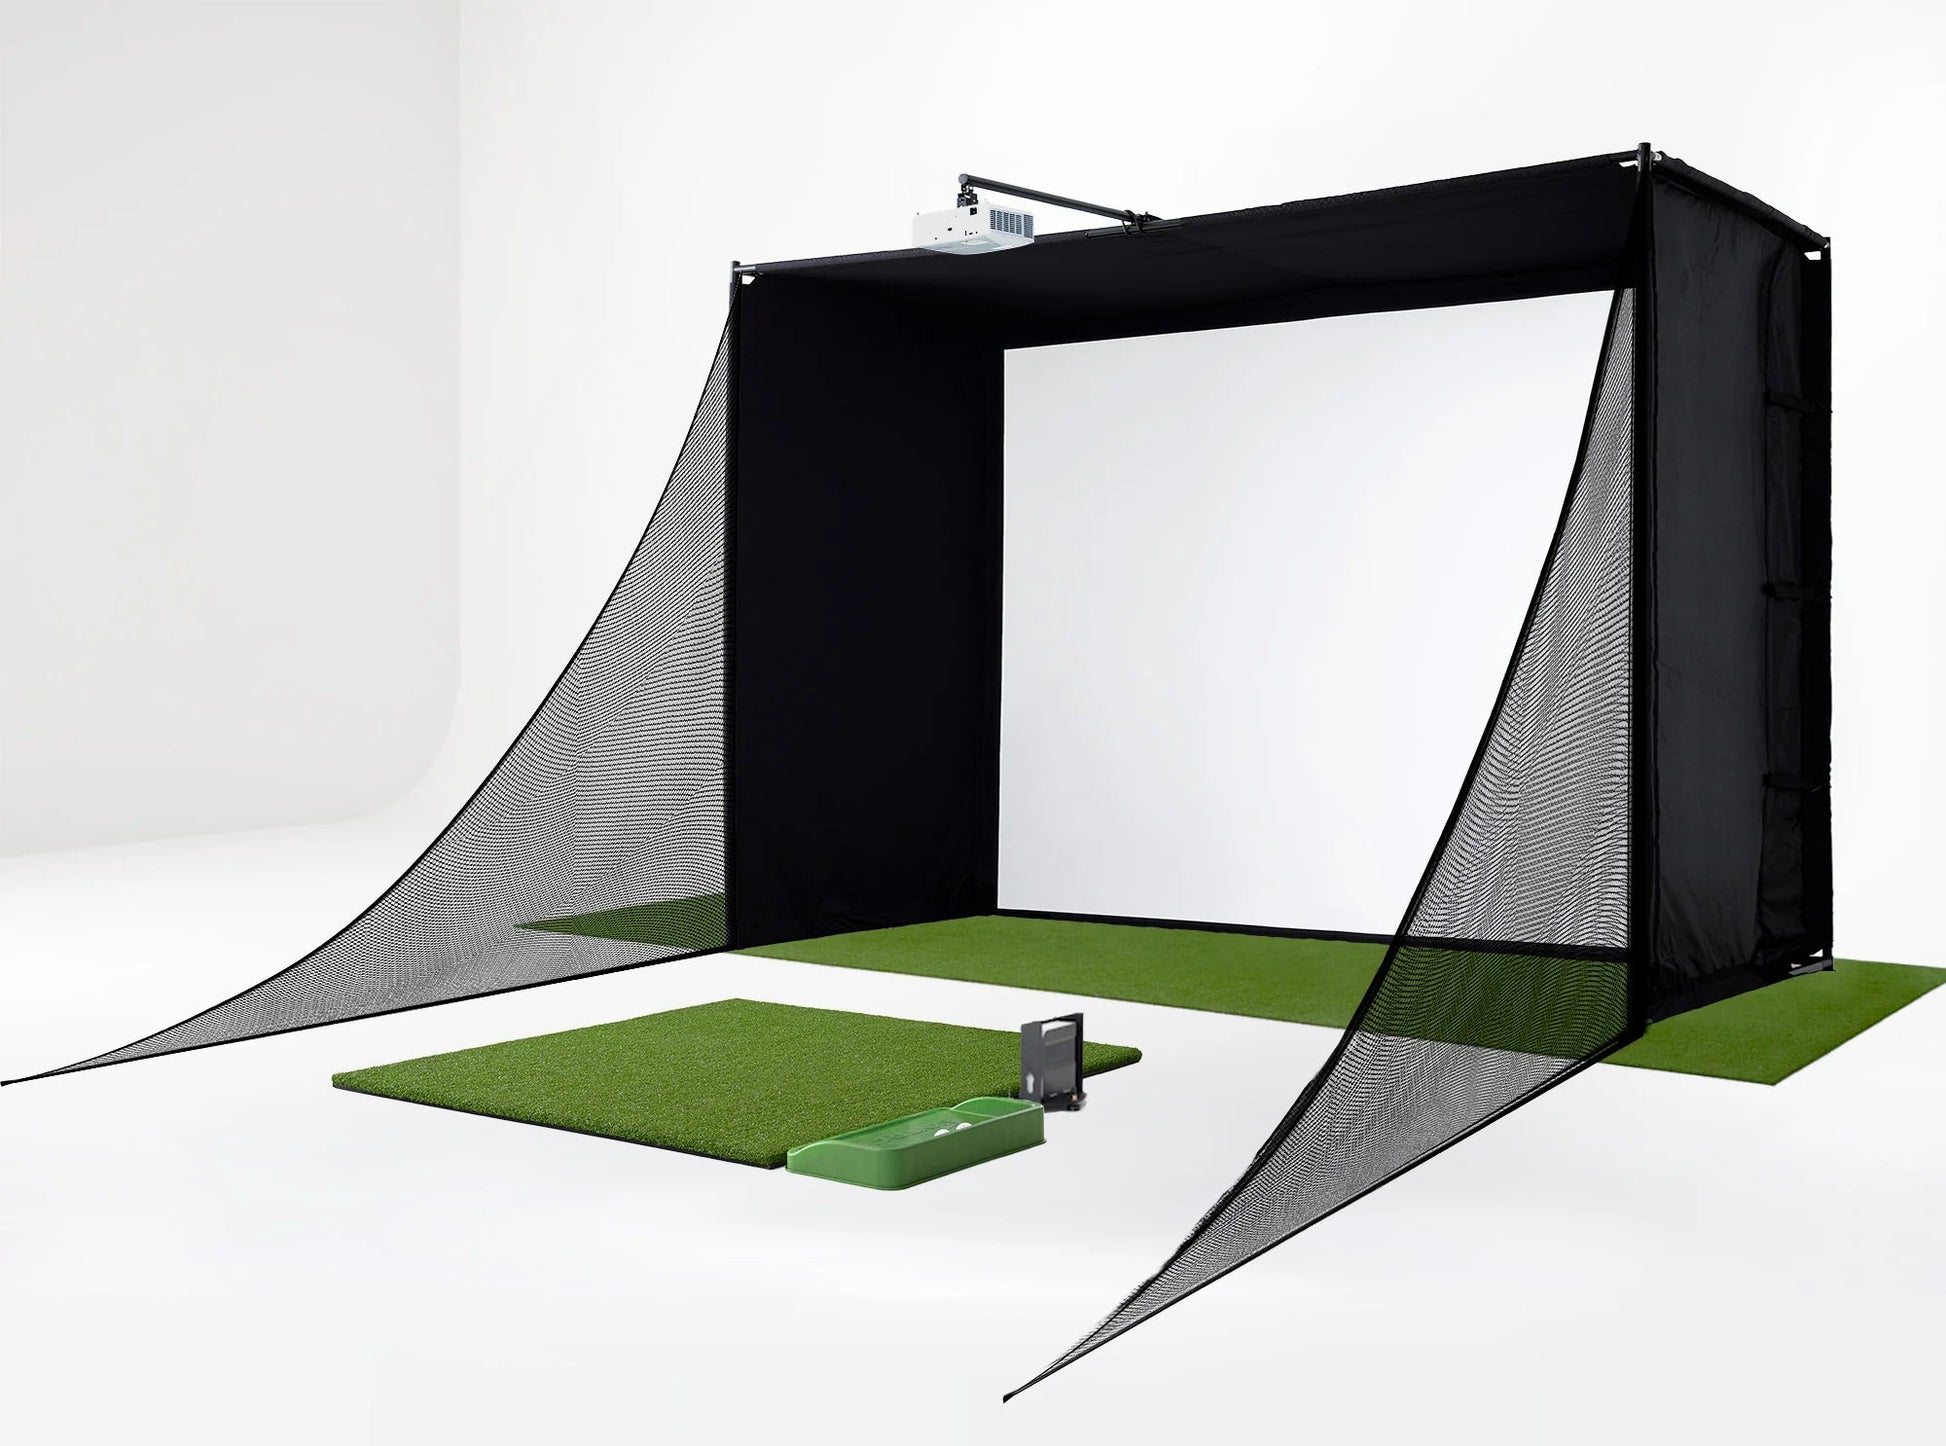 SkyTrak Golf - Skytrak Golf Simulator Studio - Big Horn Golfer